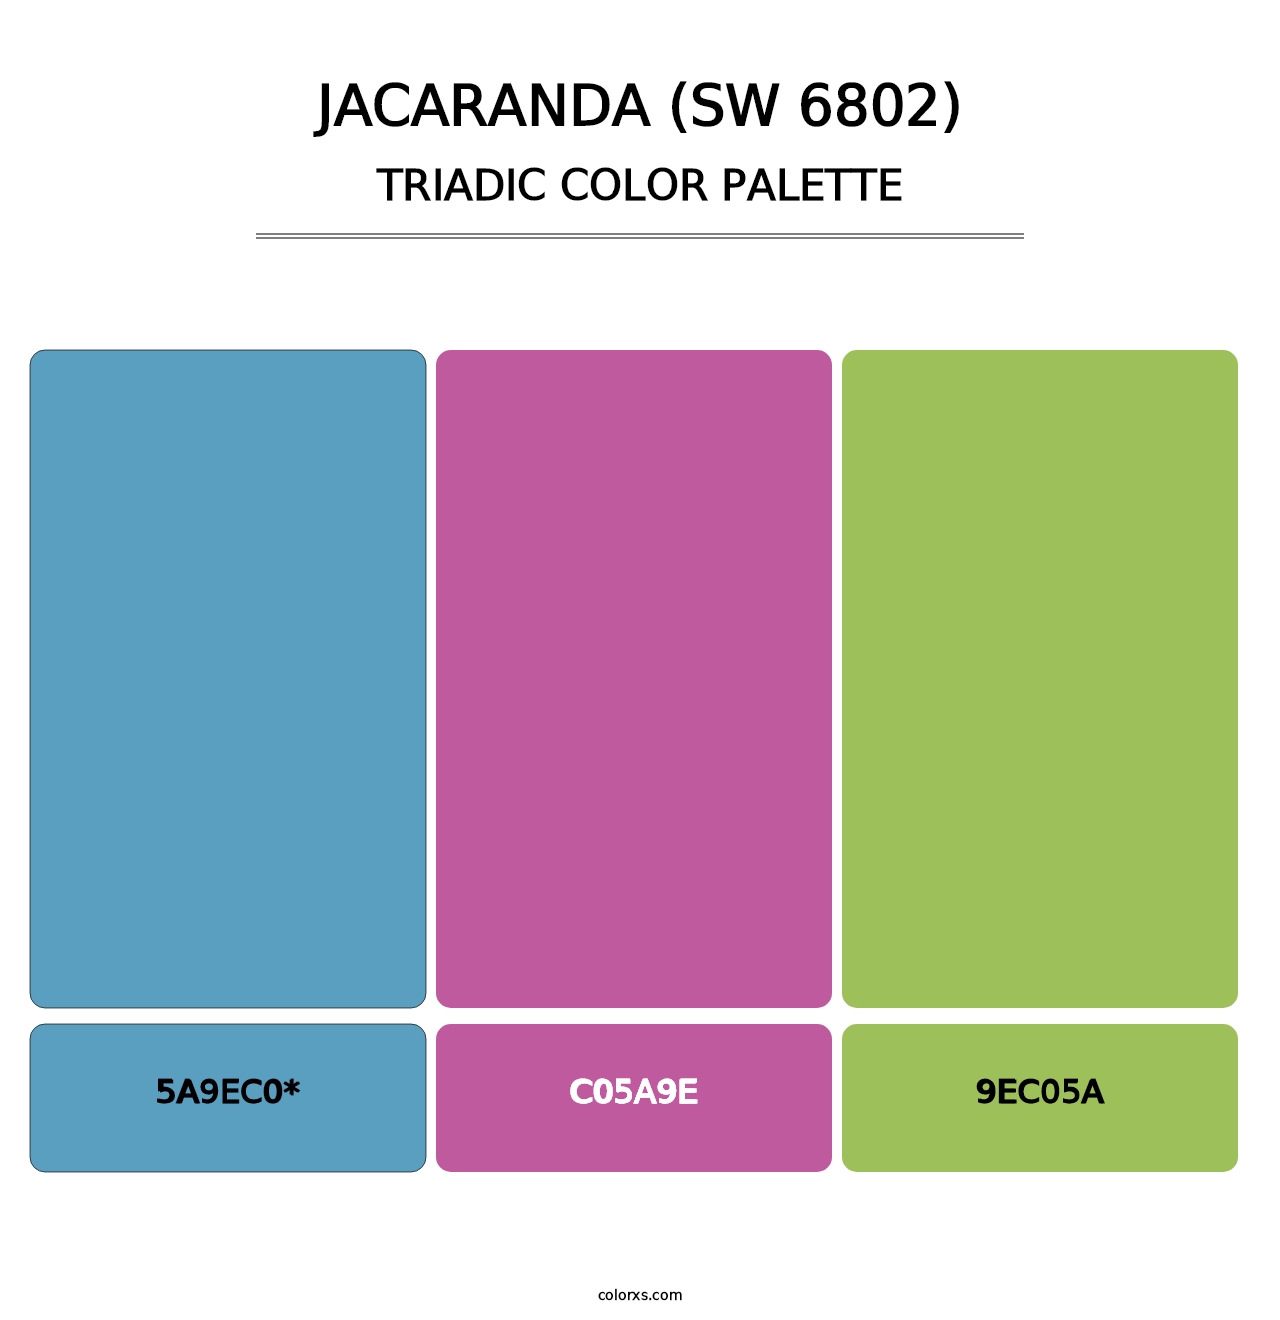 Jacaranda (SW 6802) - Triadic Color Palette